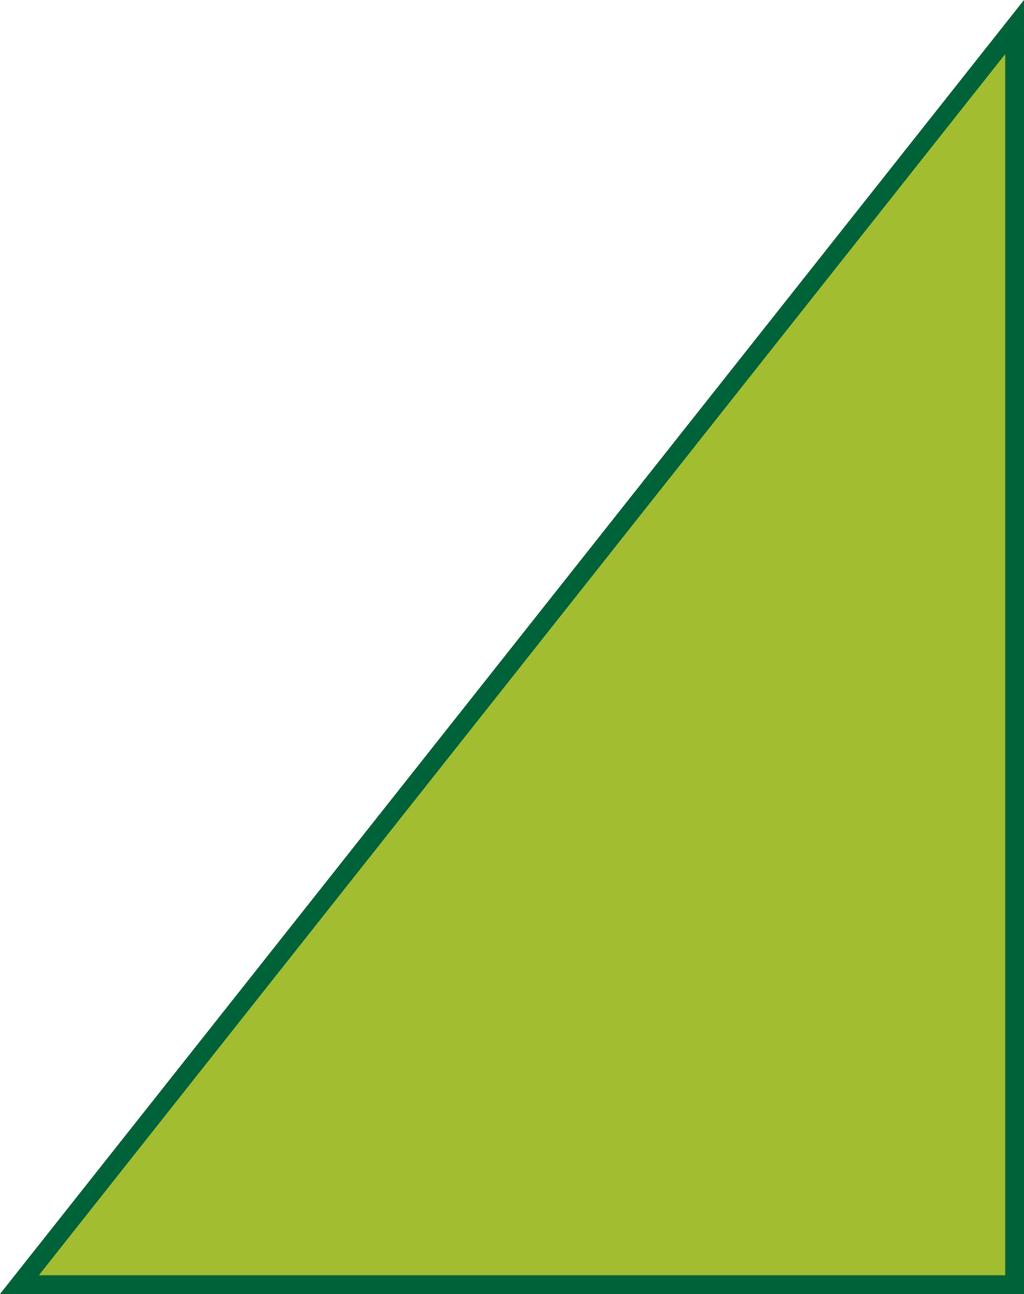 Unidad 10 Semejanza Triángulos de Kepler Para aplicar los teoremas del cateto y de la altura en un triángulo rectángulo hace falta trazar la altura sobre la hipotenusa.